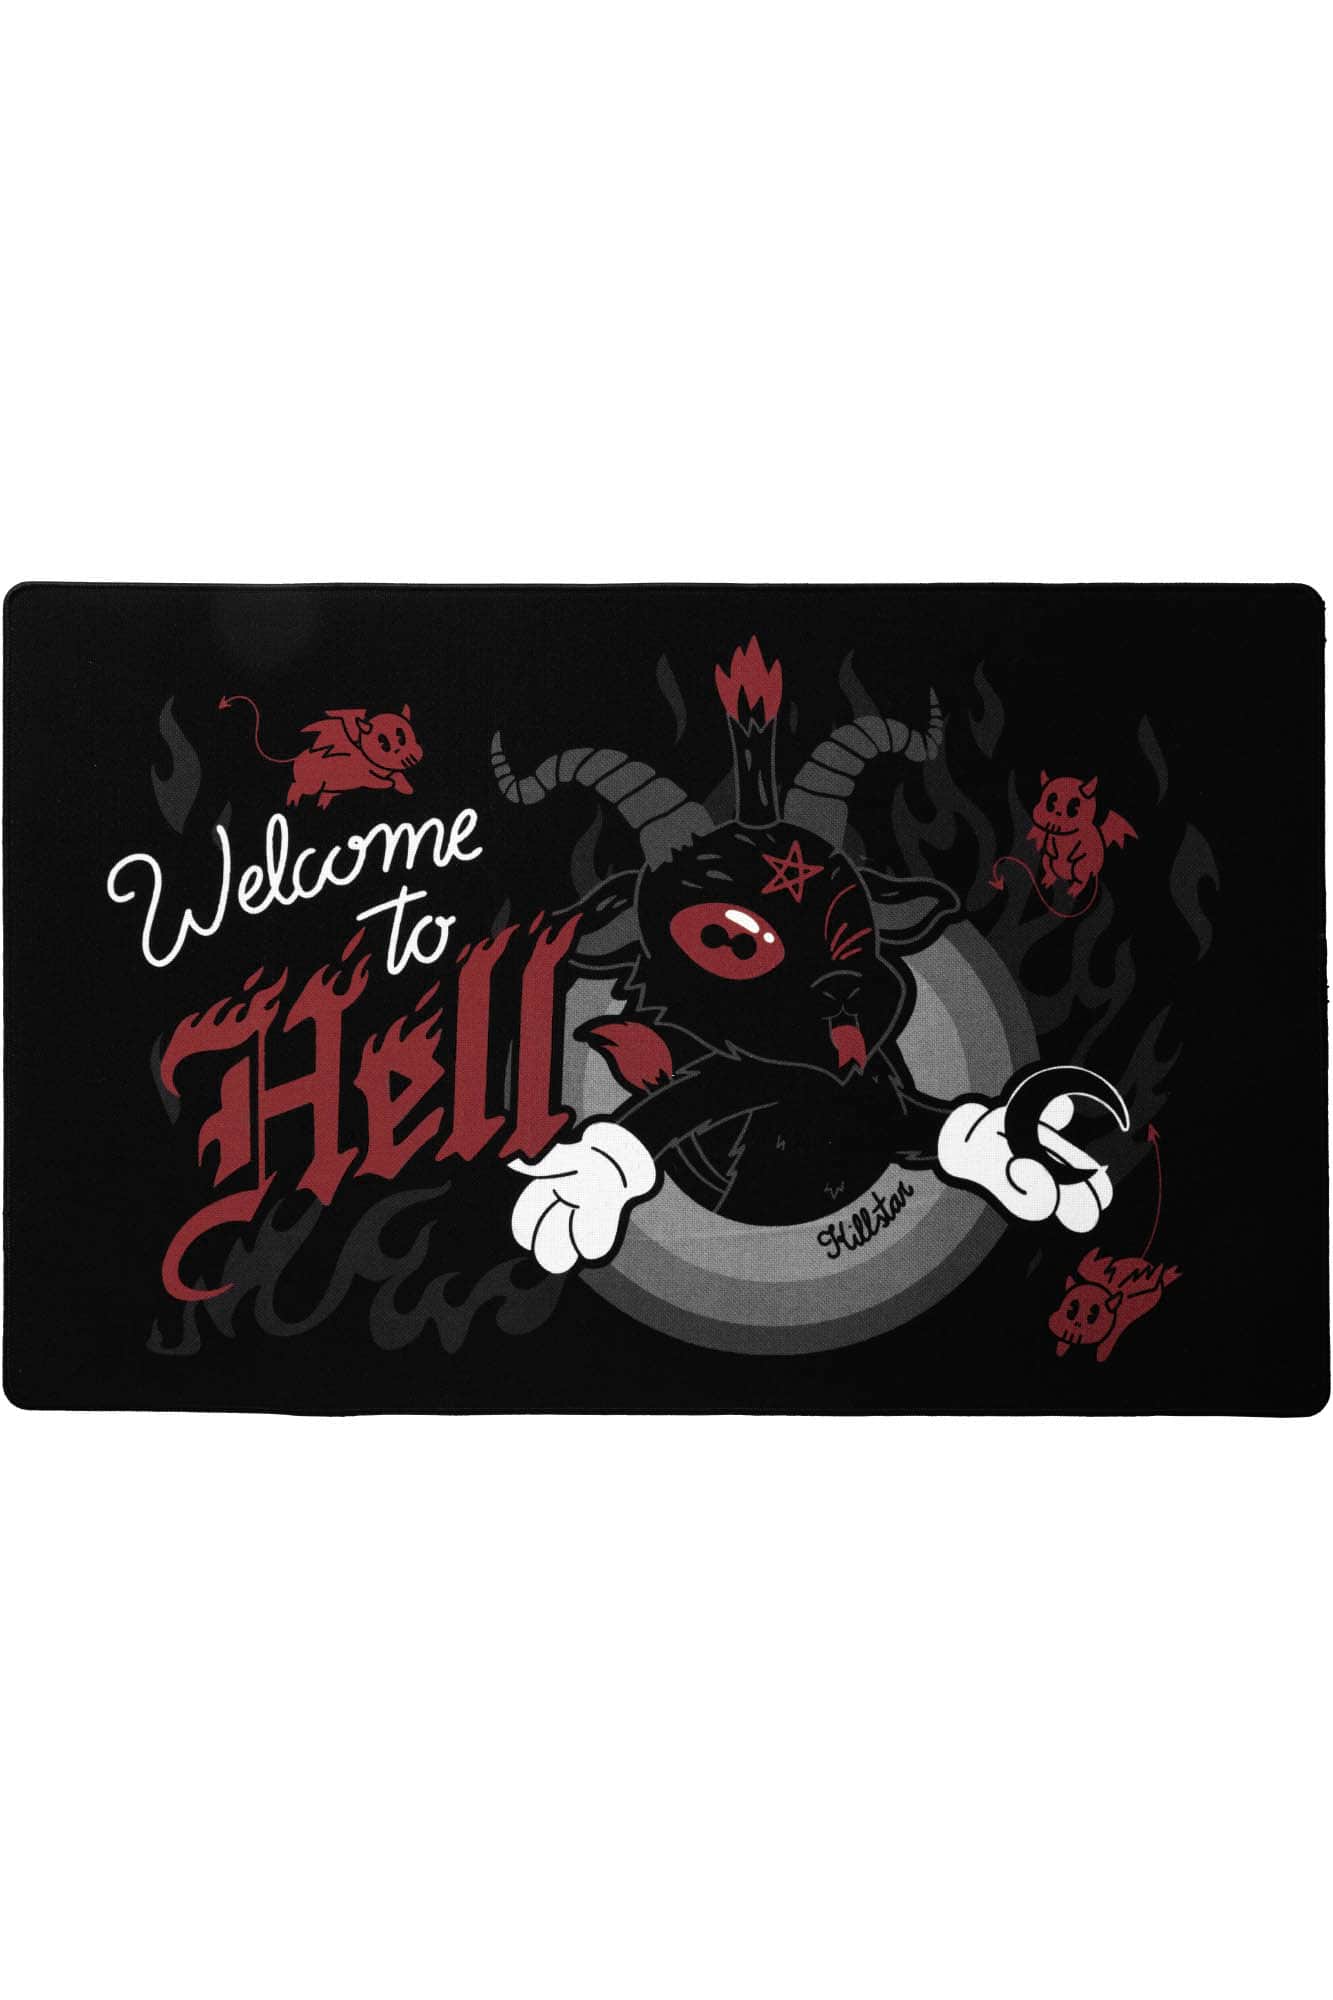 Welcome to Hell Doormat